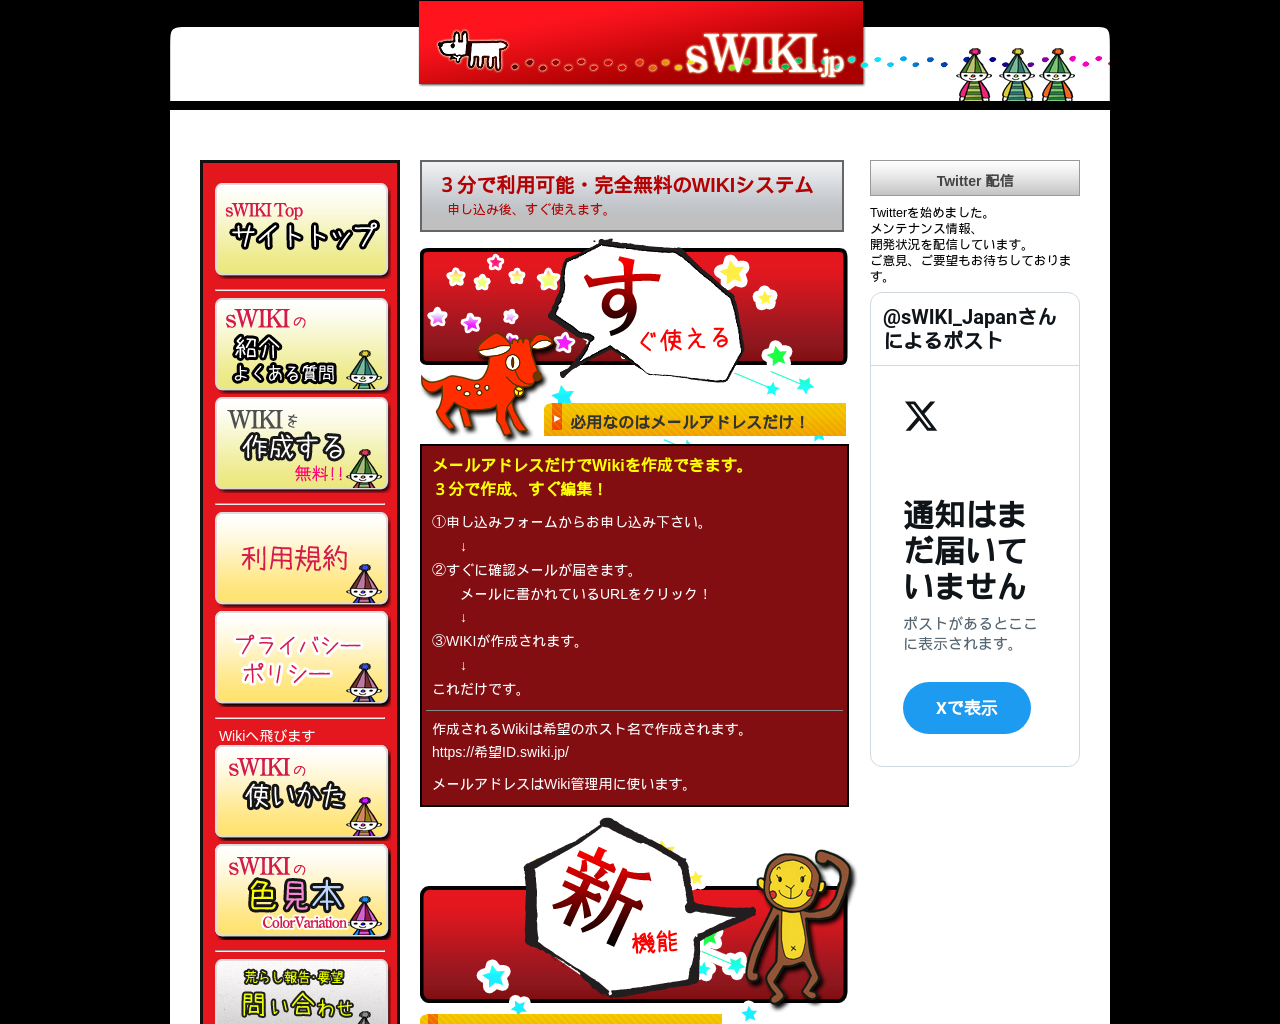 swiki.jp